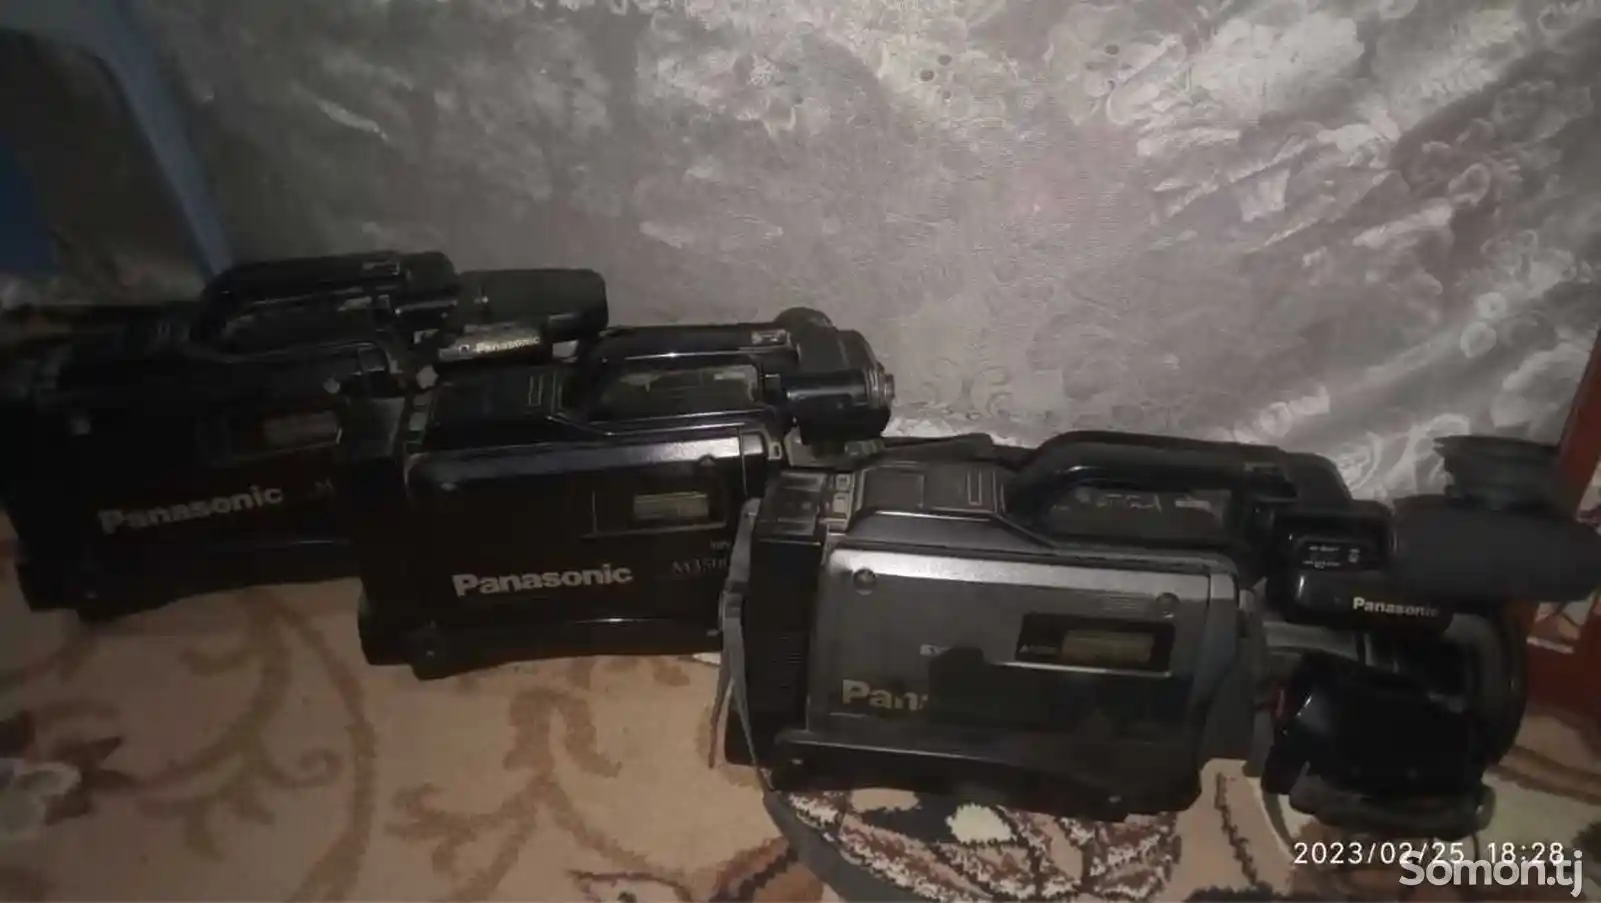 Видеокамеры Panasonic